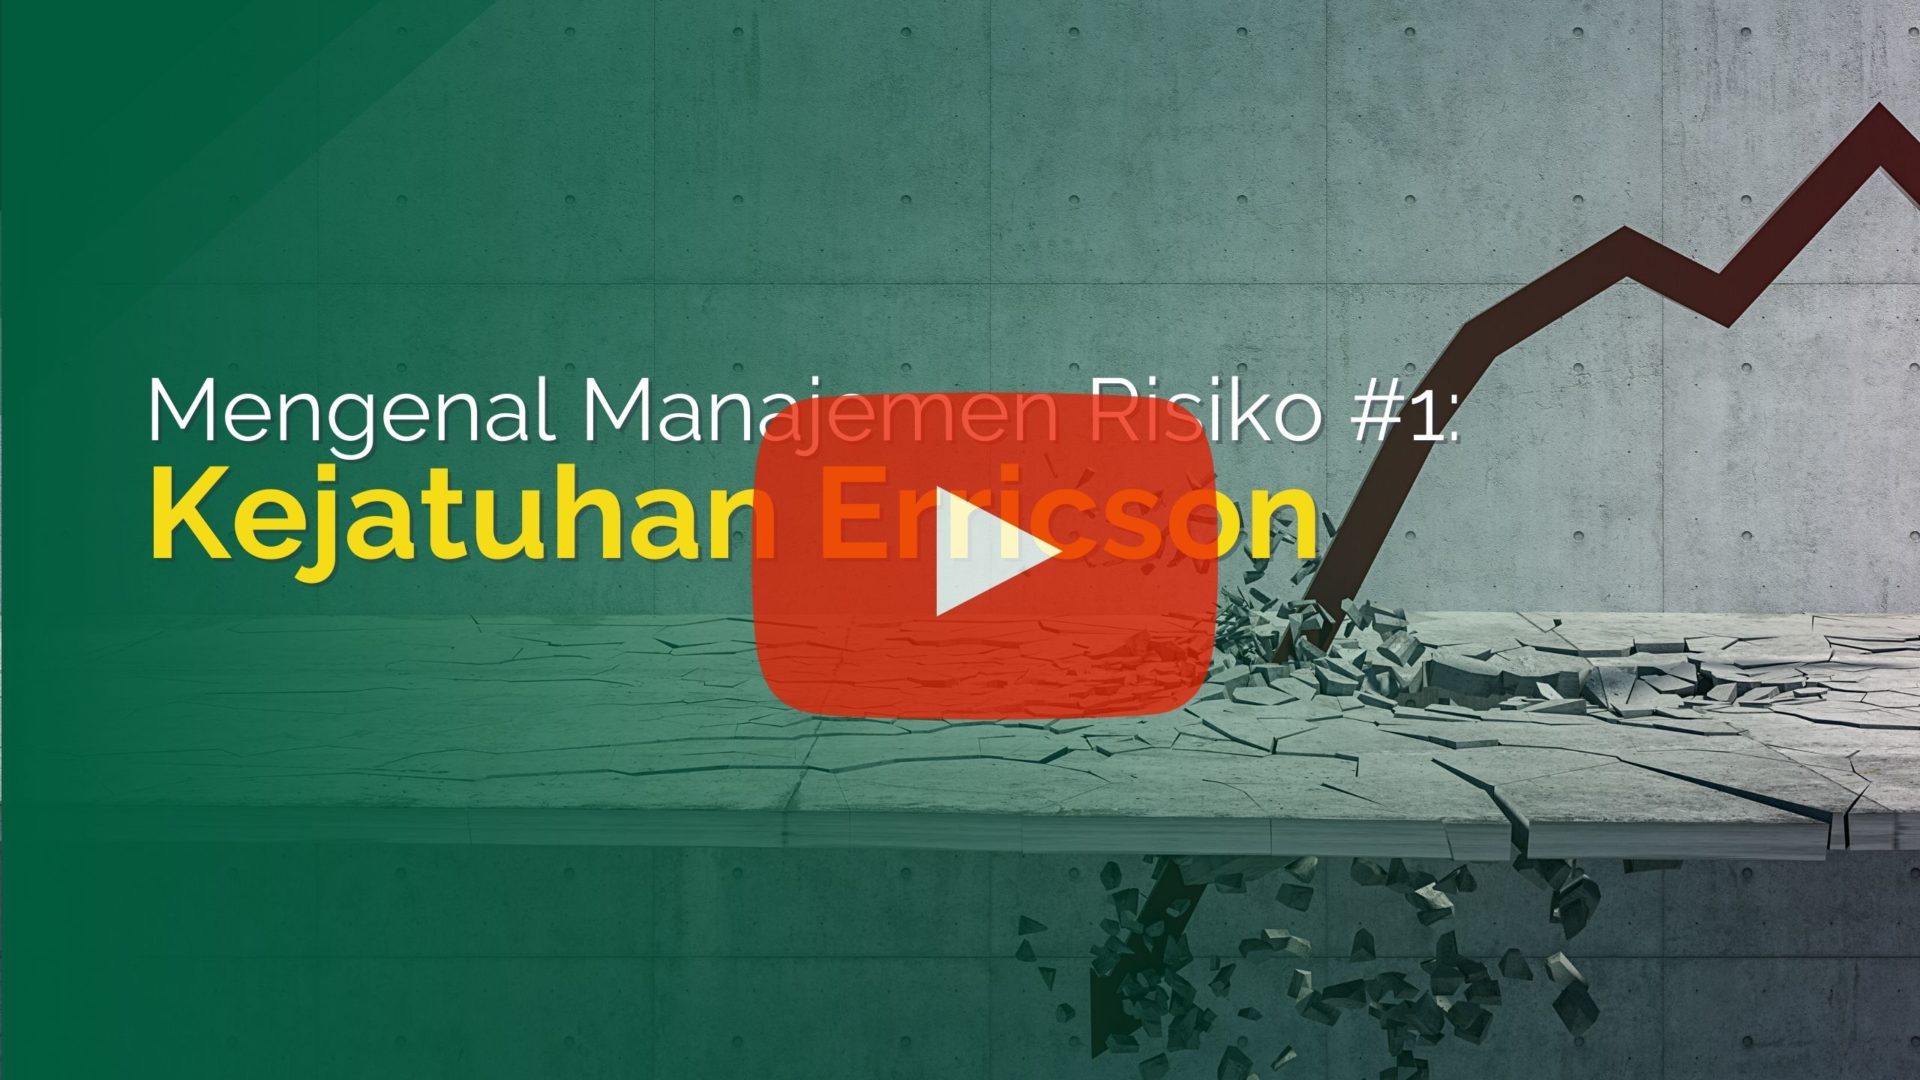 Mengenal Manajemen Risiko #1 – Kejatuhan Erricson